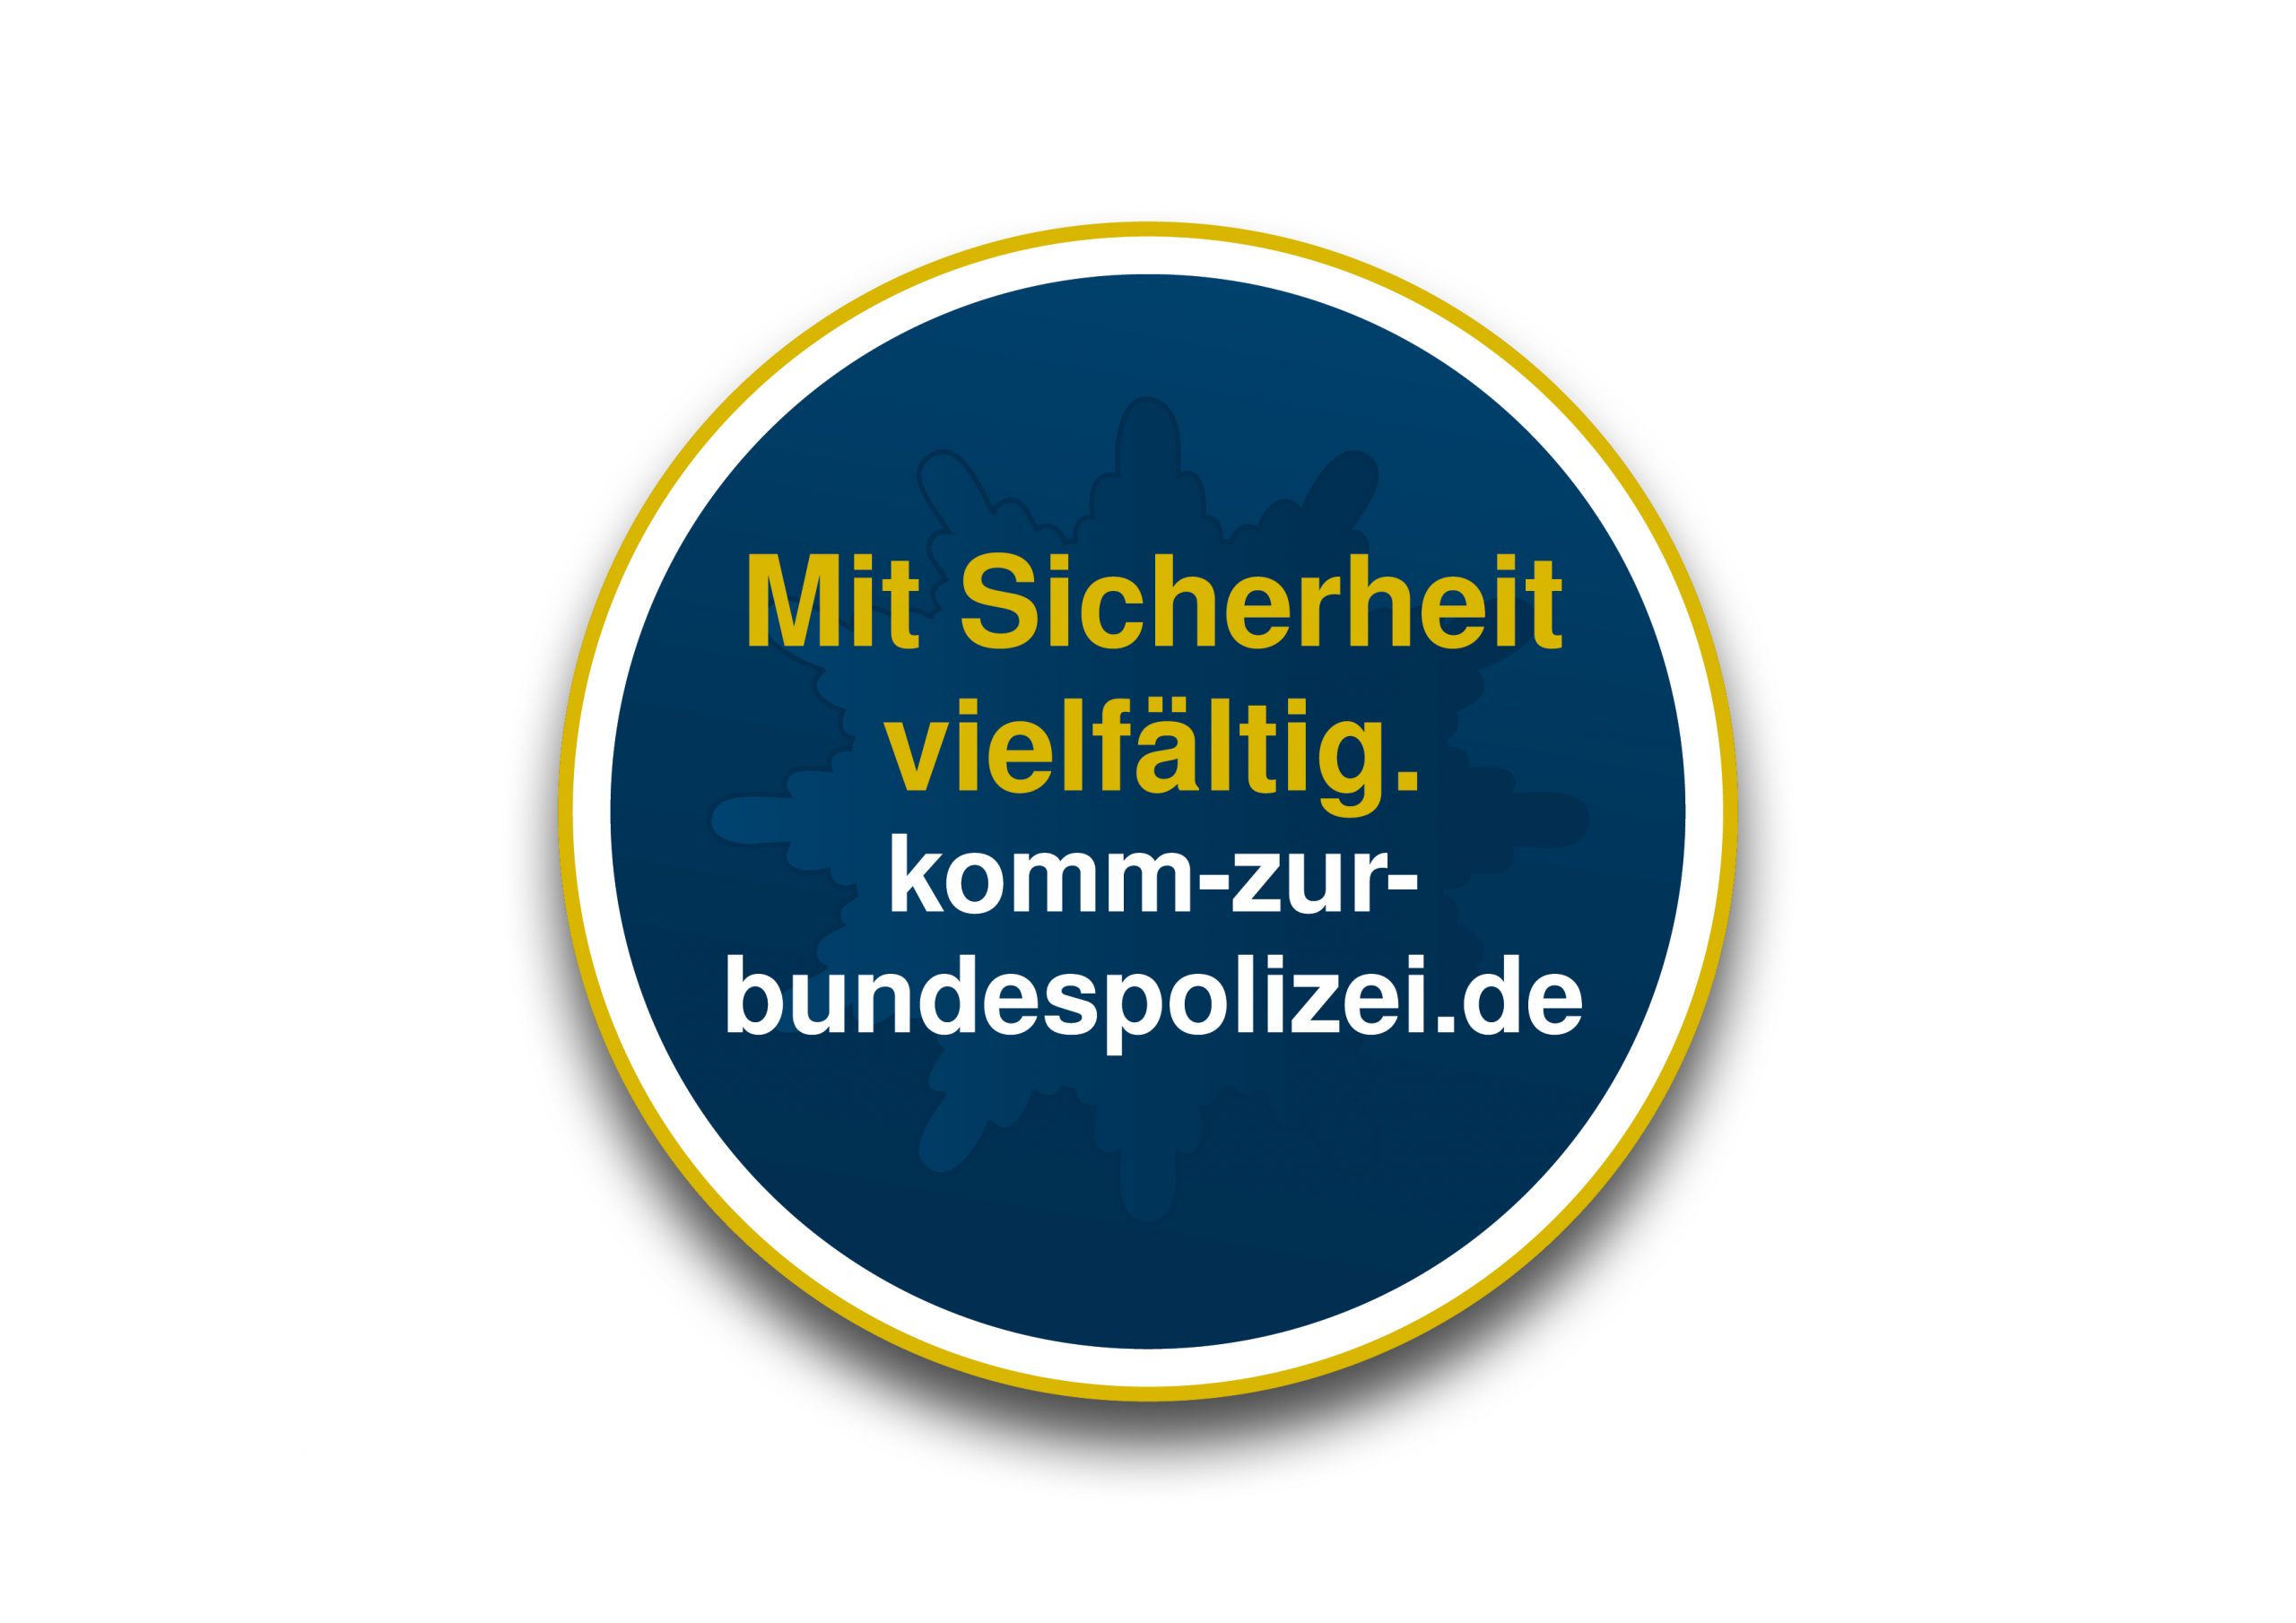 Recruitment Campaign for the Bundespolizei